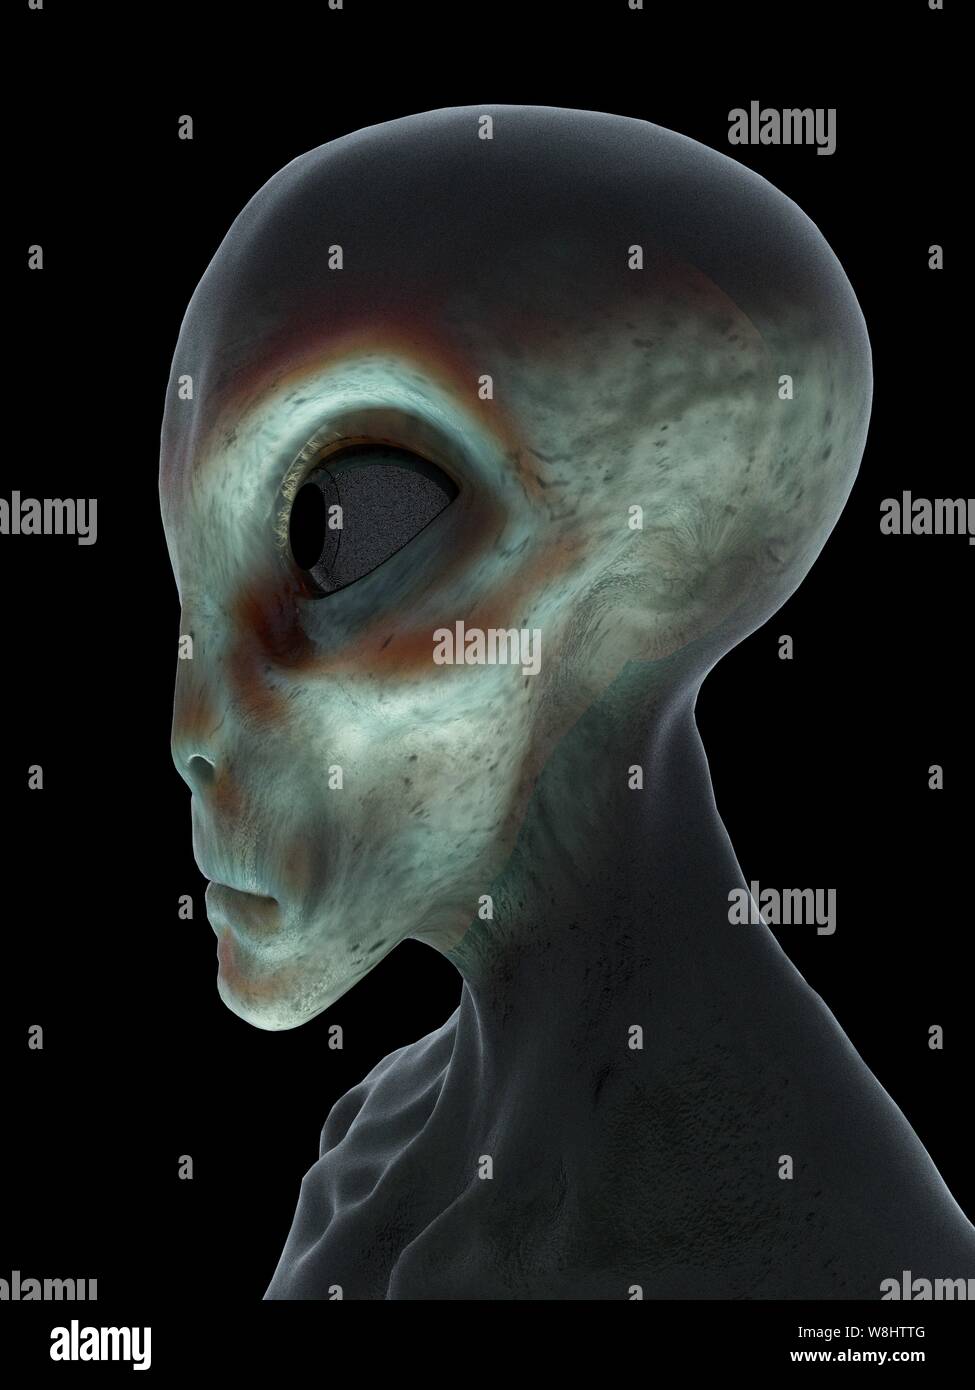 Alien, computer illustration. Stock Photo